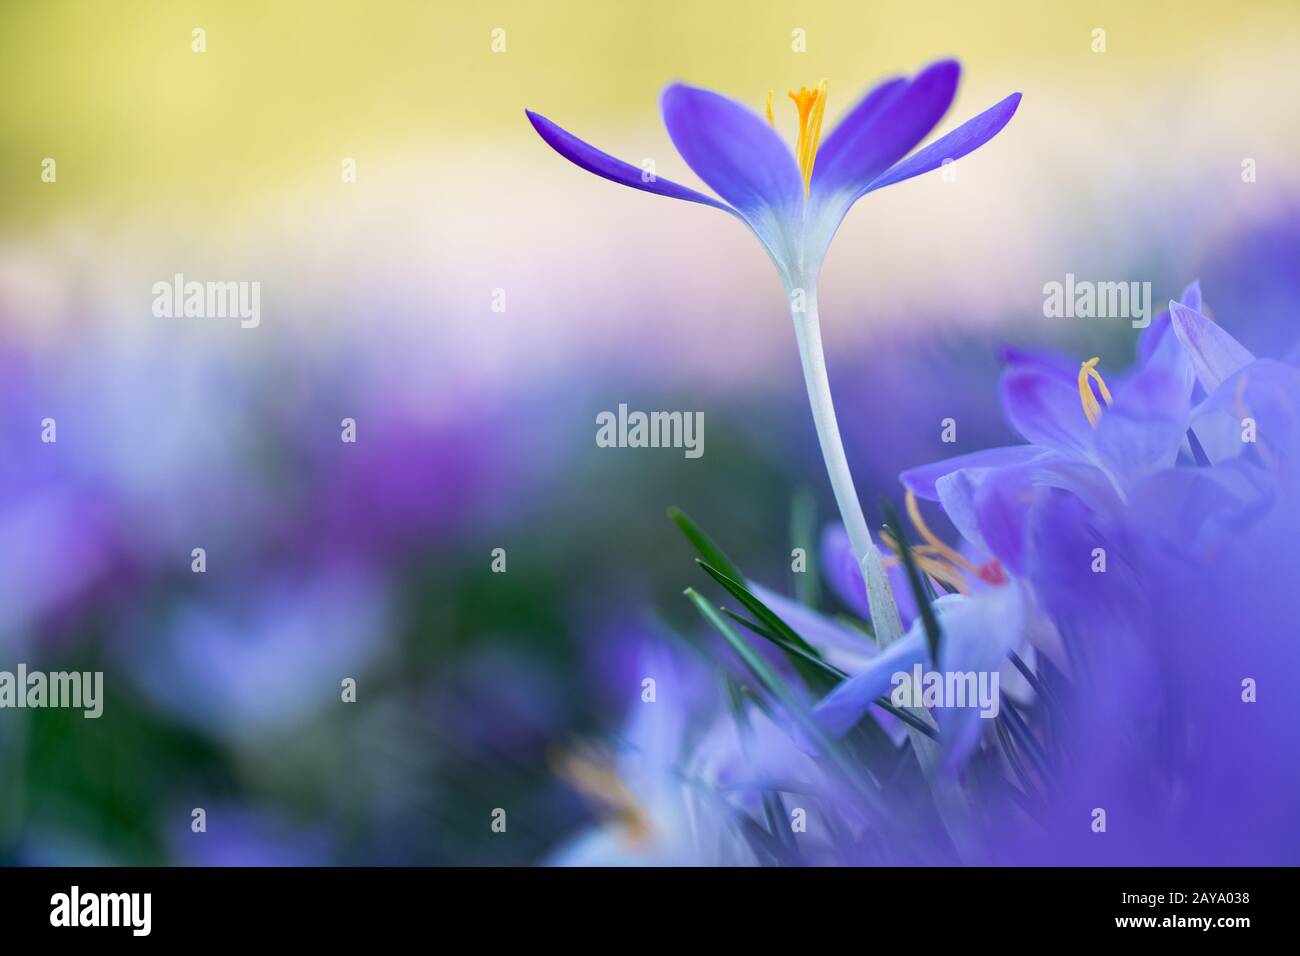 Frühlingsboten: violette Krokusse freigestellt im Blumenmeer Stock Photo